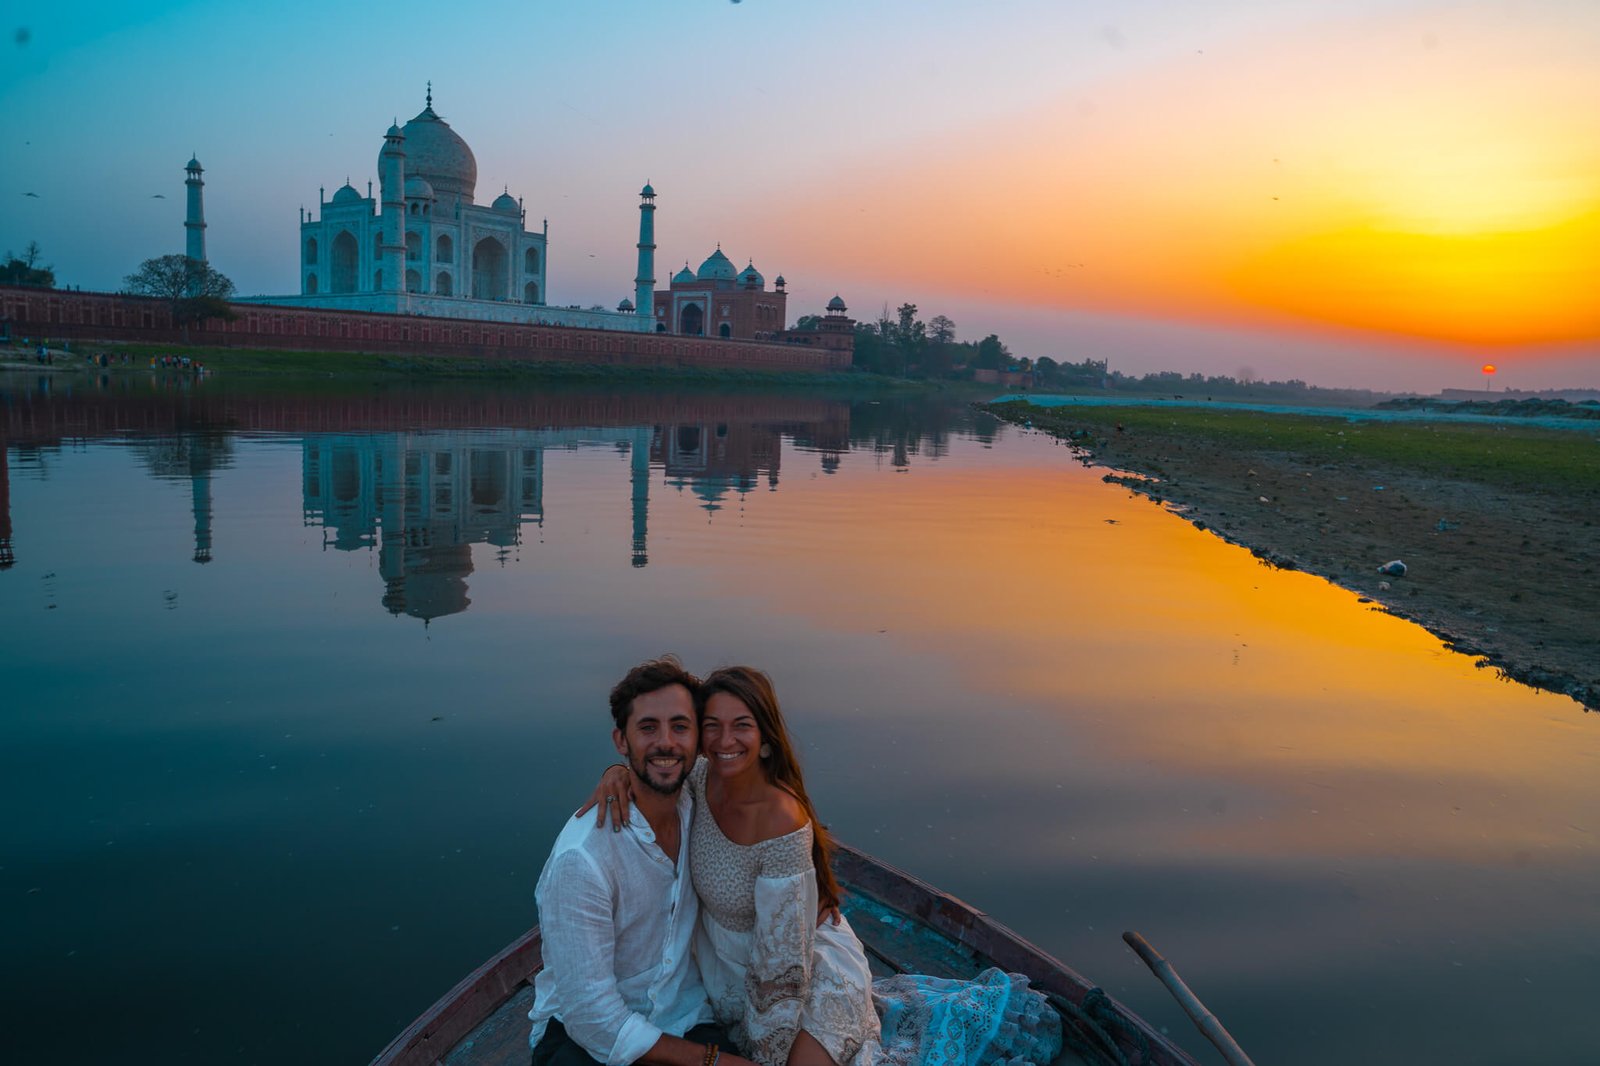 Taj Mahal boat ride